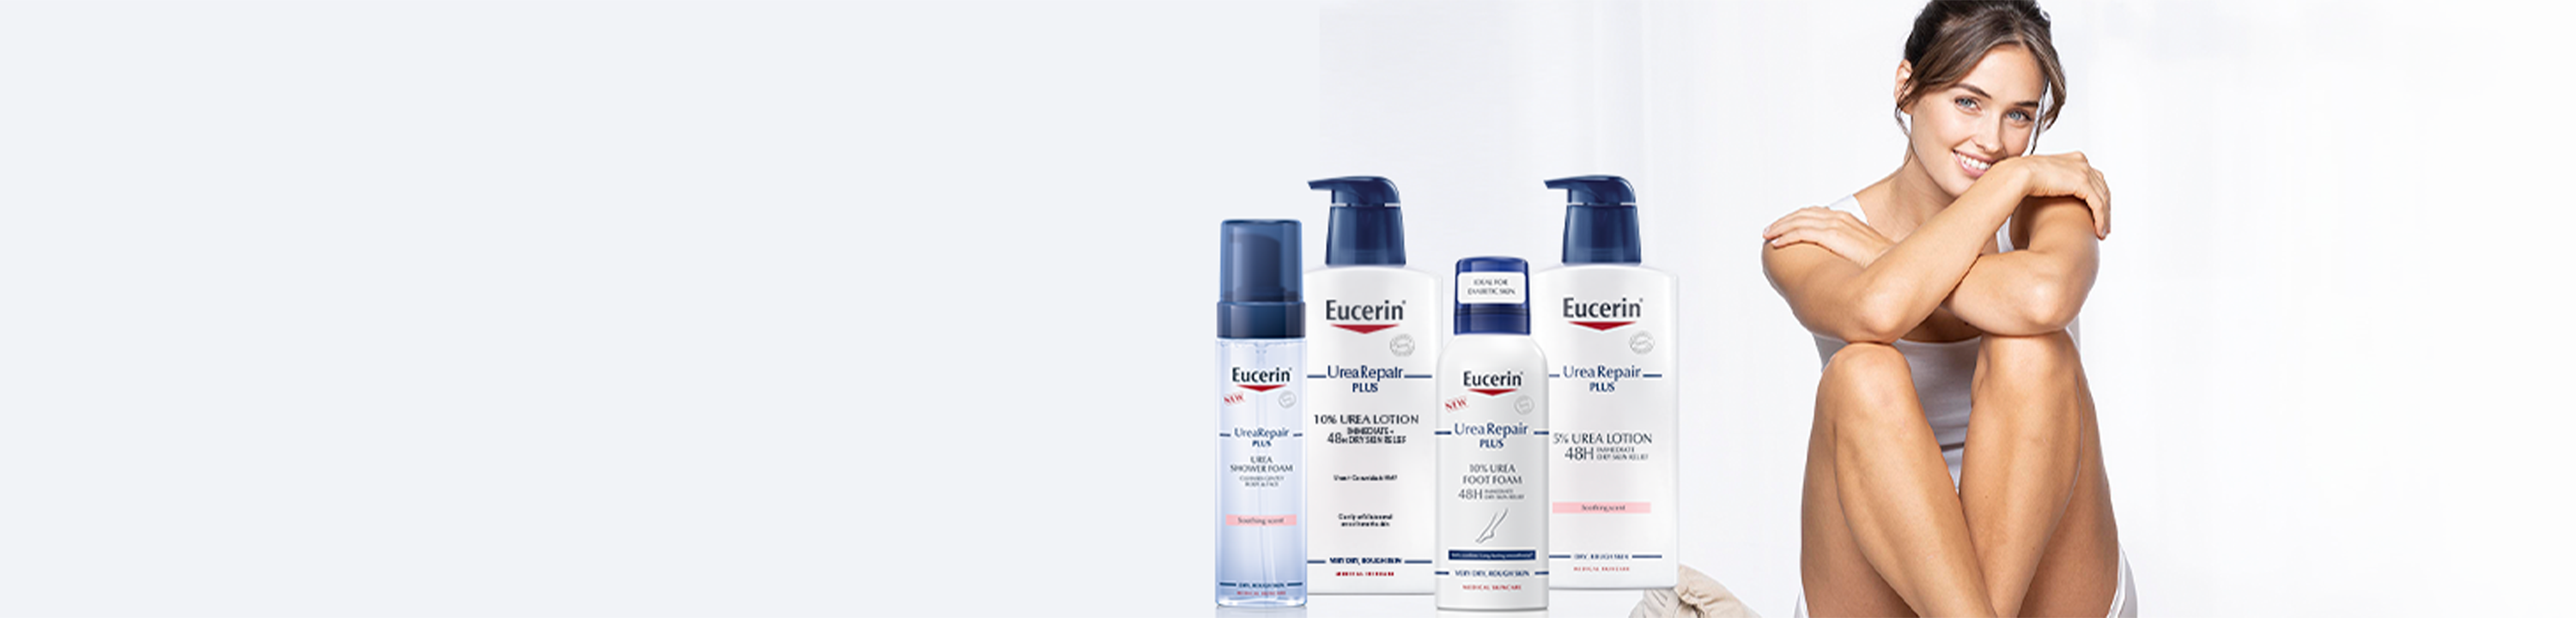 produtos Eucerin para pele seca e sensível